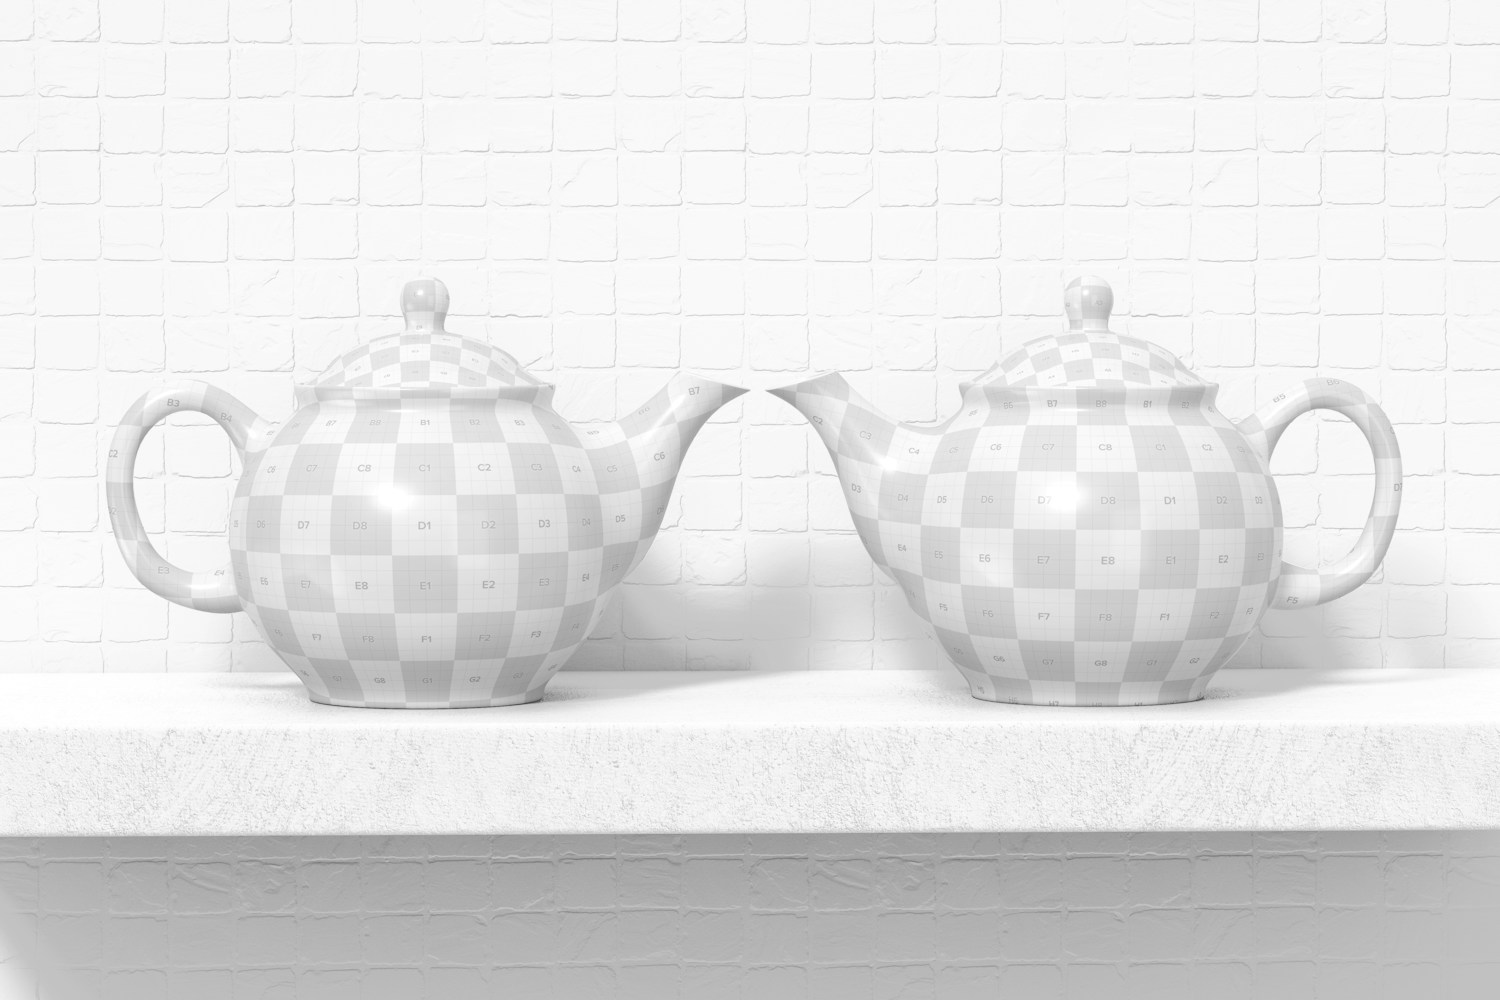 Ceramic Teapots Mockup